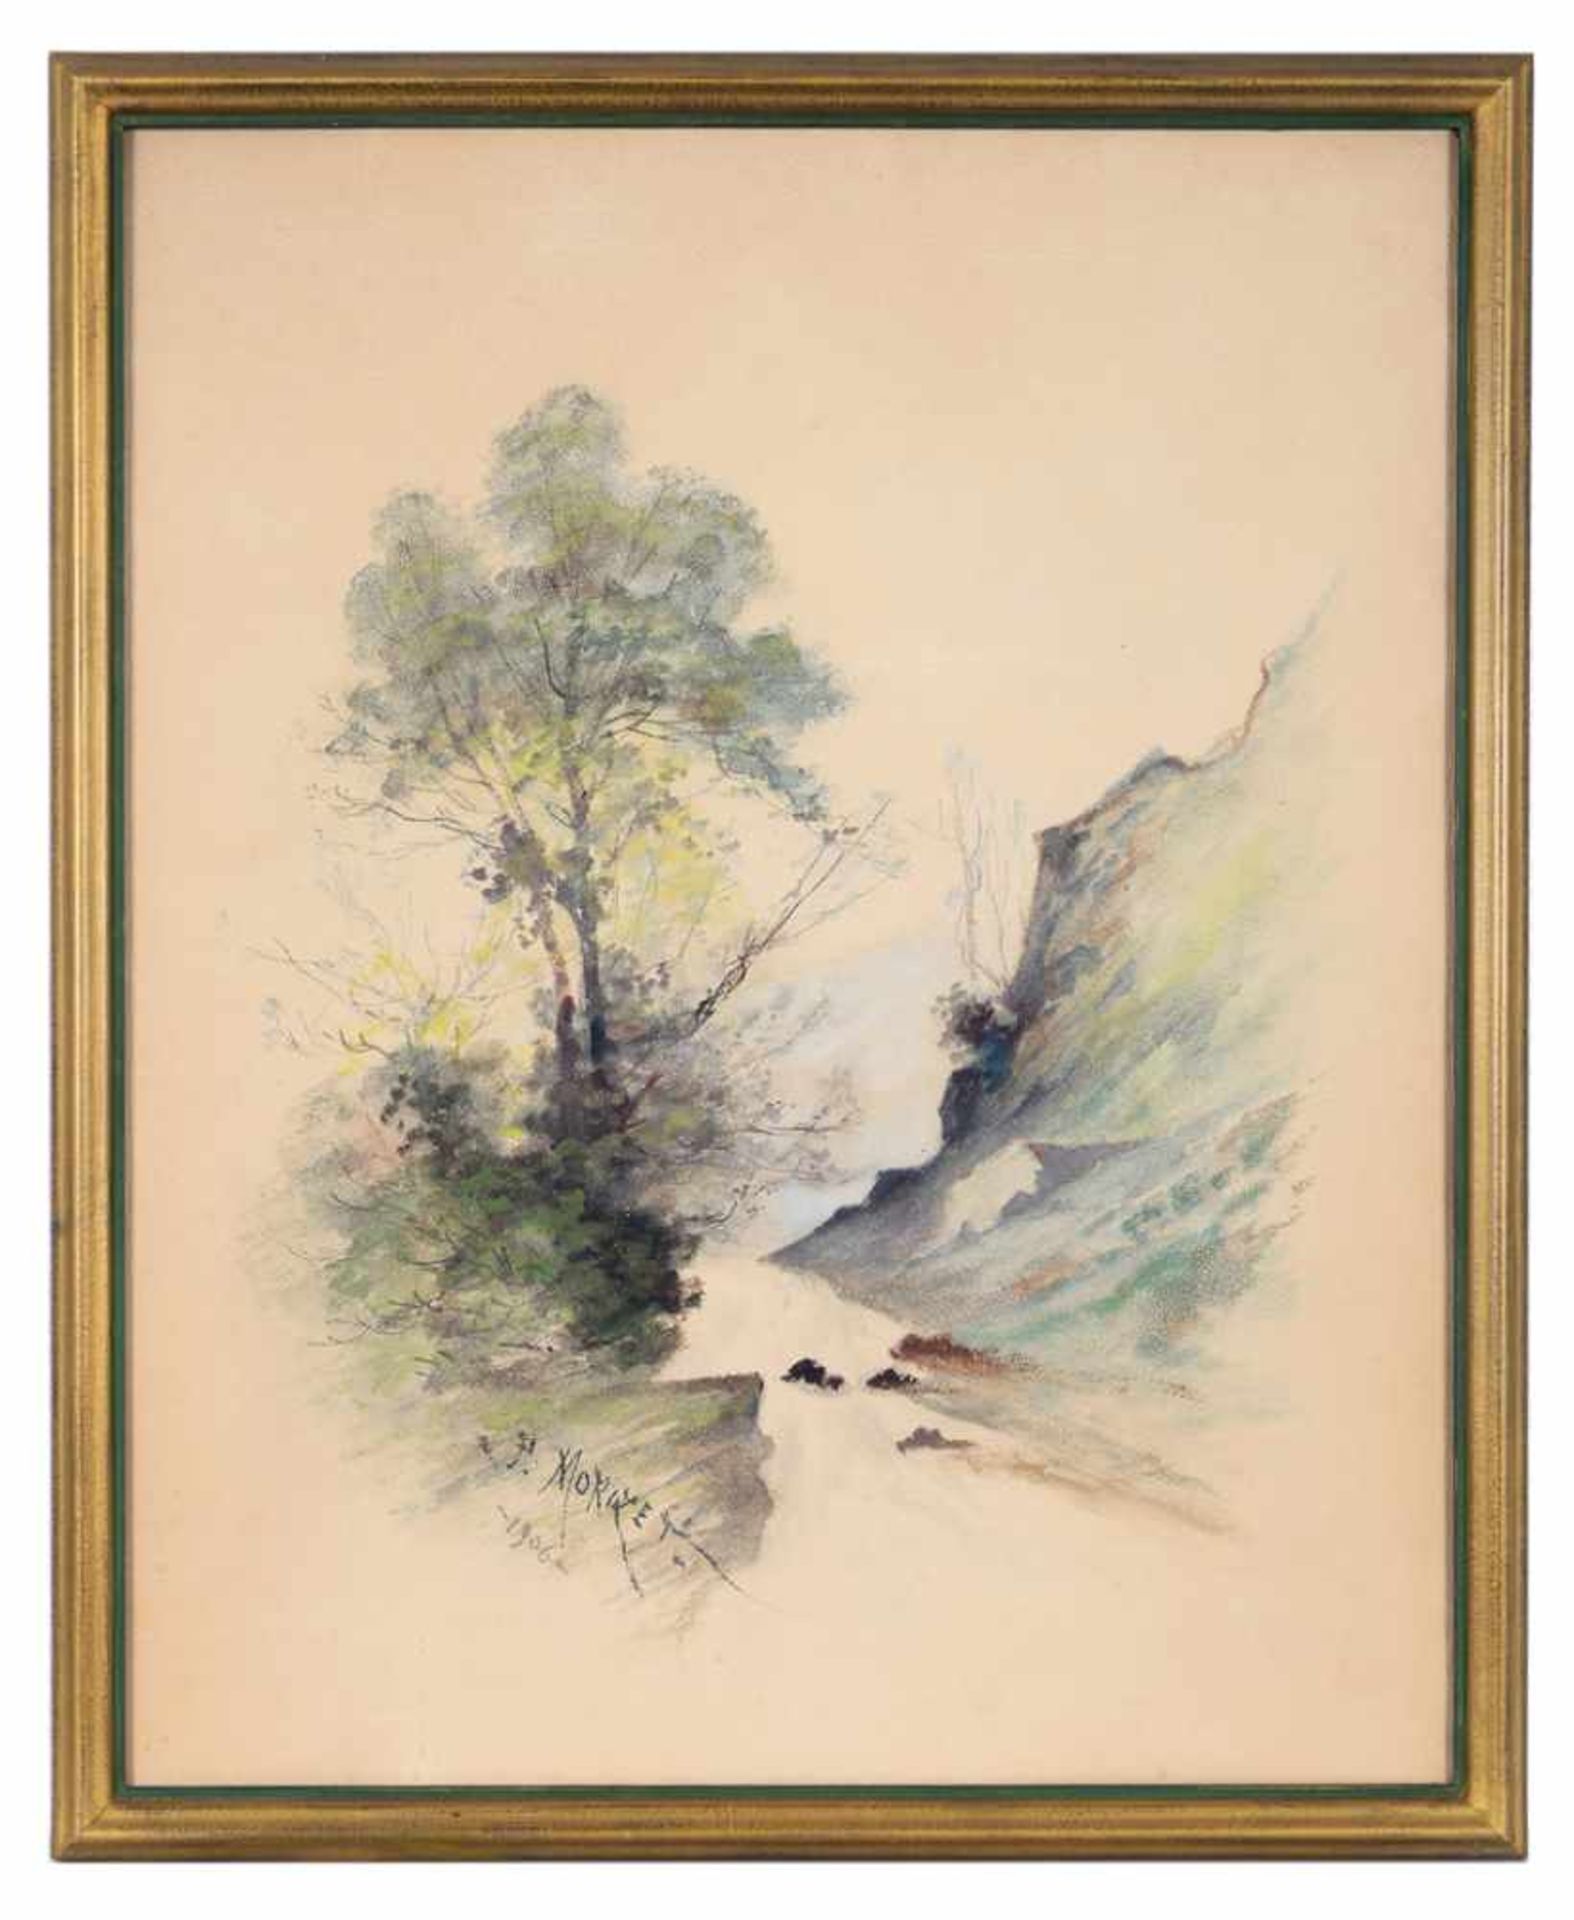 Paul Louis Morizet. Landschaft mit Baum und angedeutetem Gebirgszug. Paul Louis Morizet (1850 - ?,